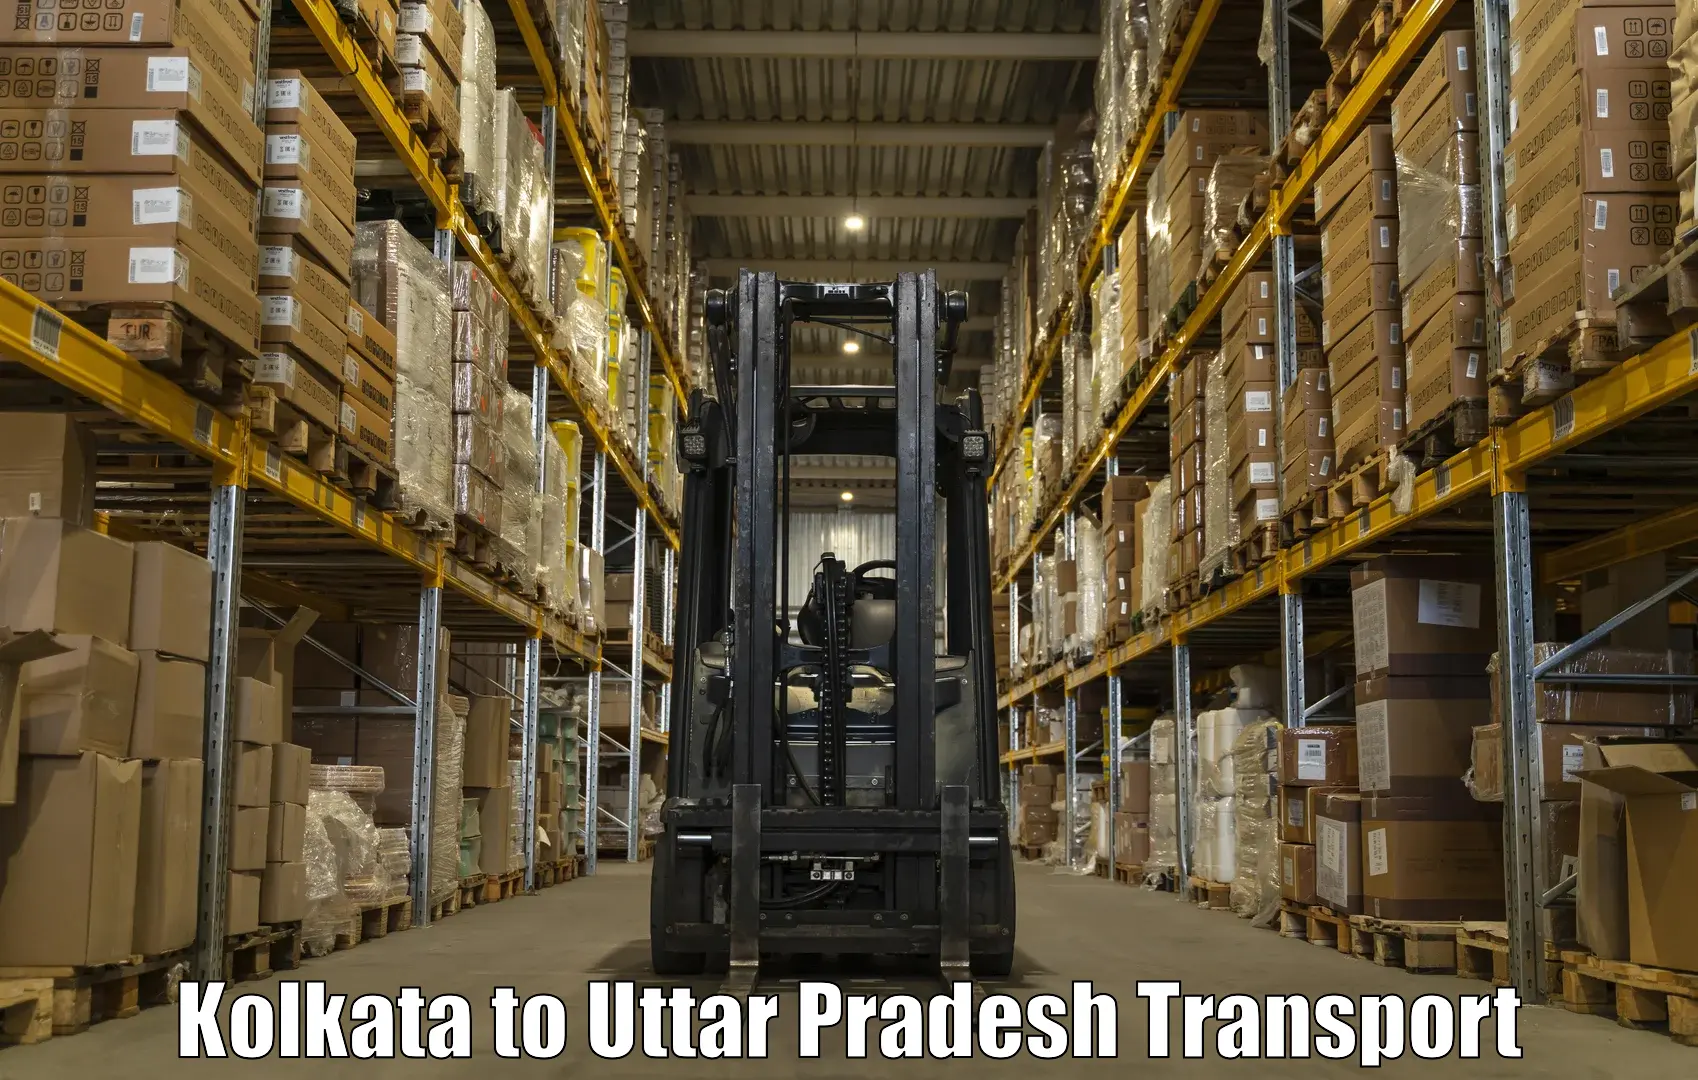 Shipping services Kolkata to IIT Varanasi